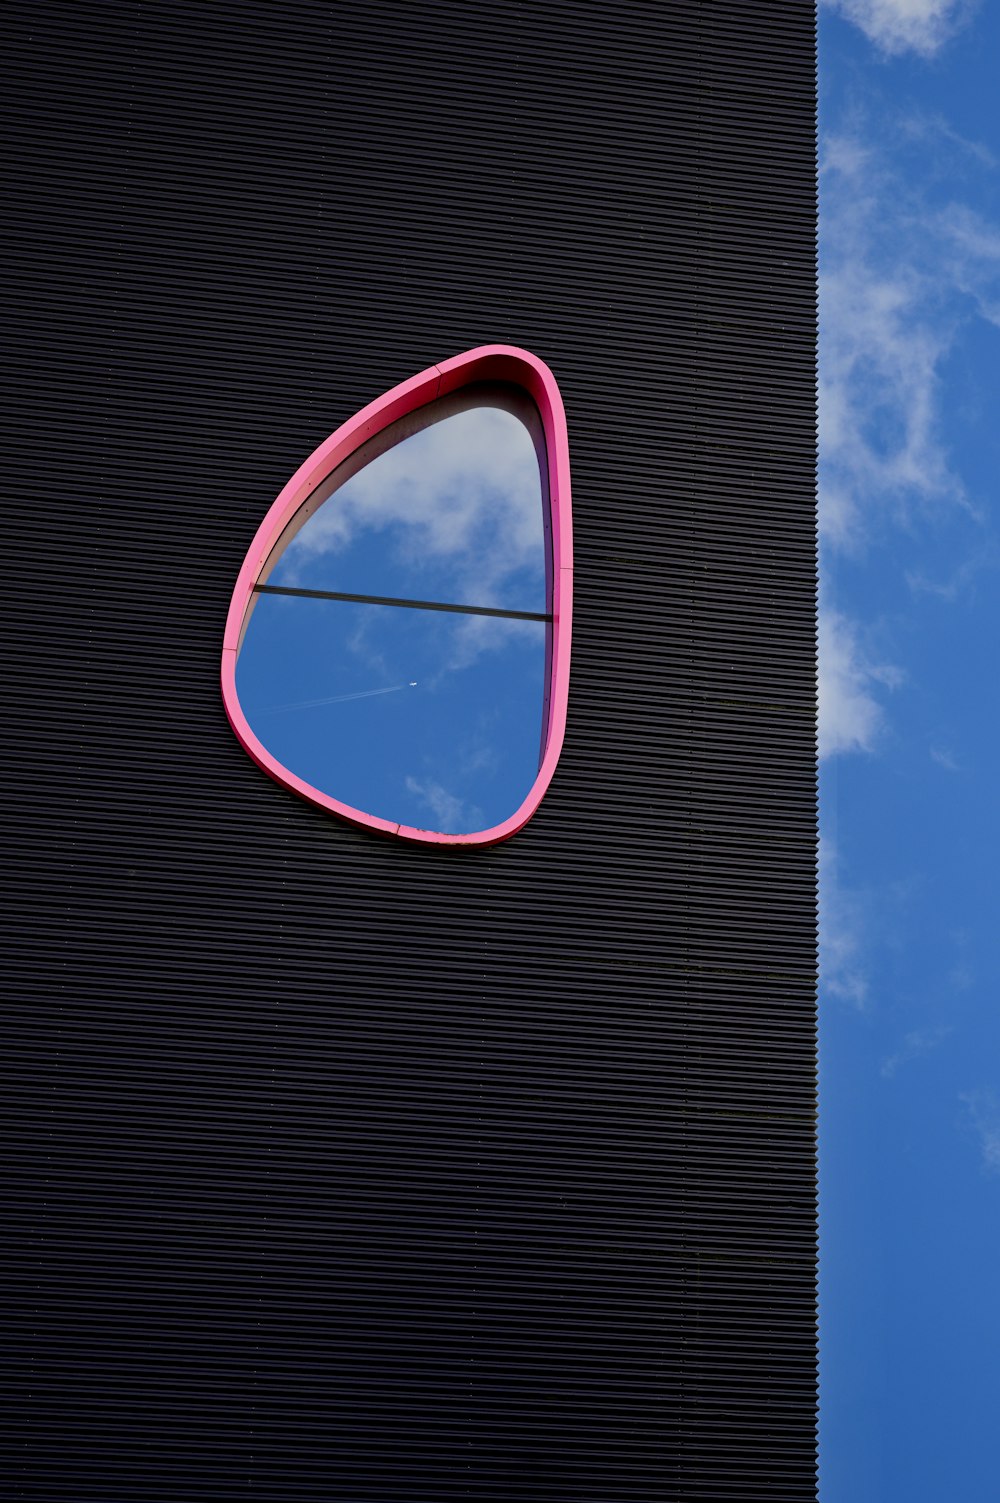 Ein runder Spiegel an einem Gebäude